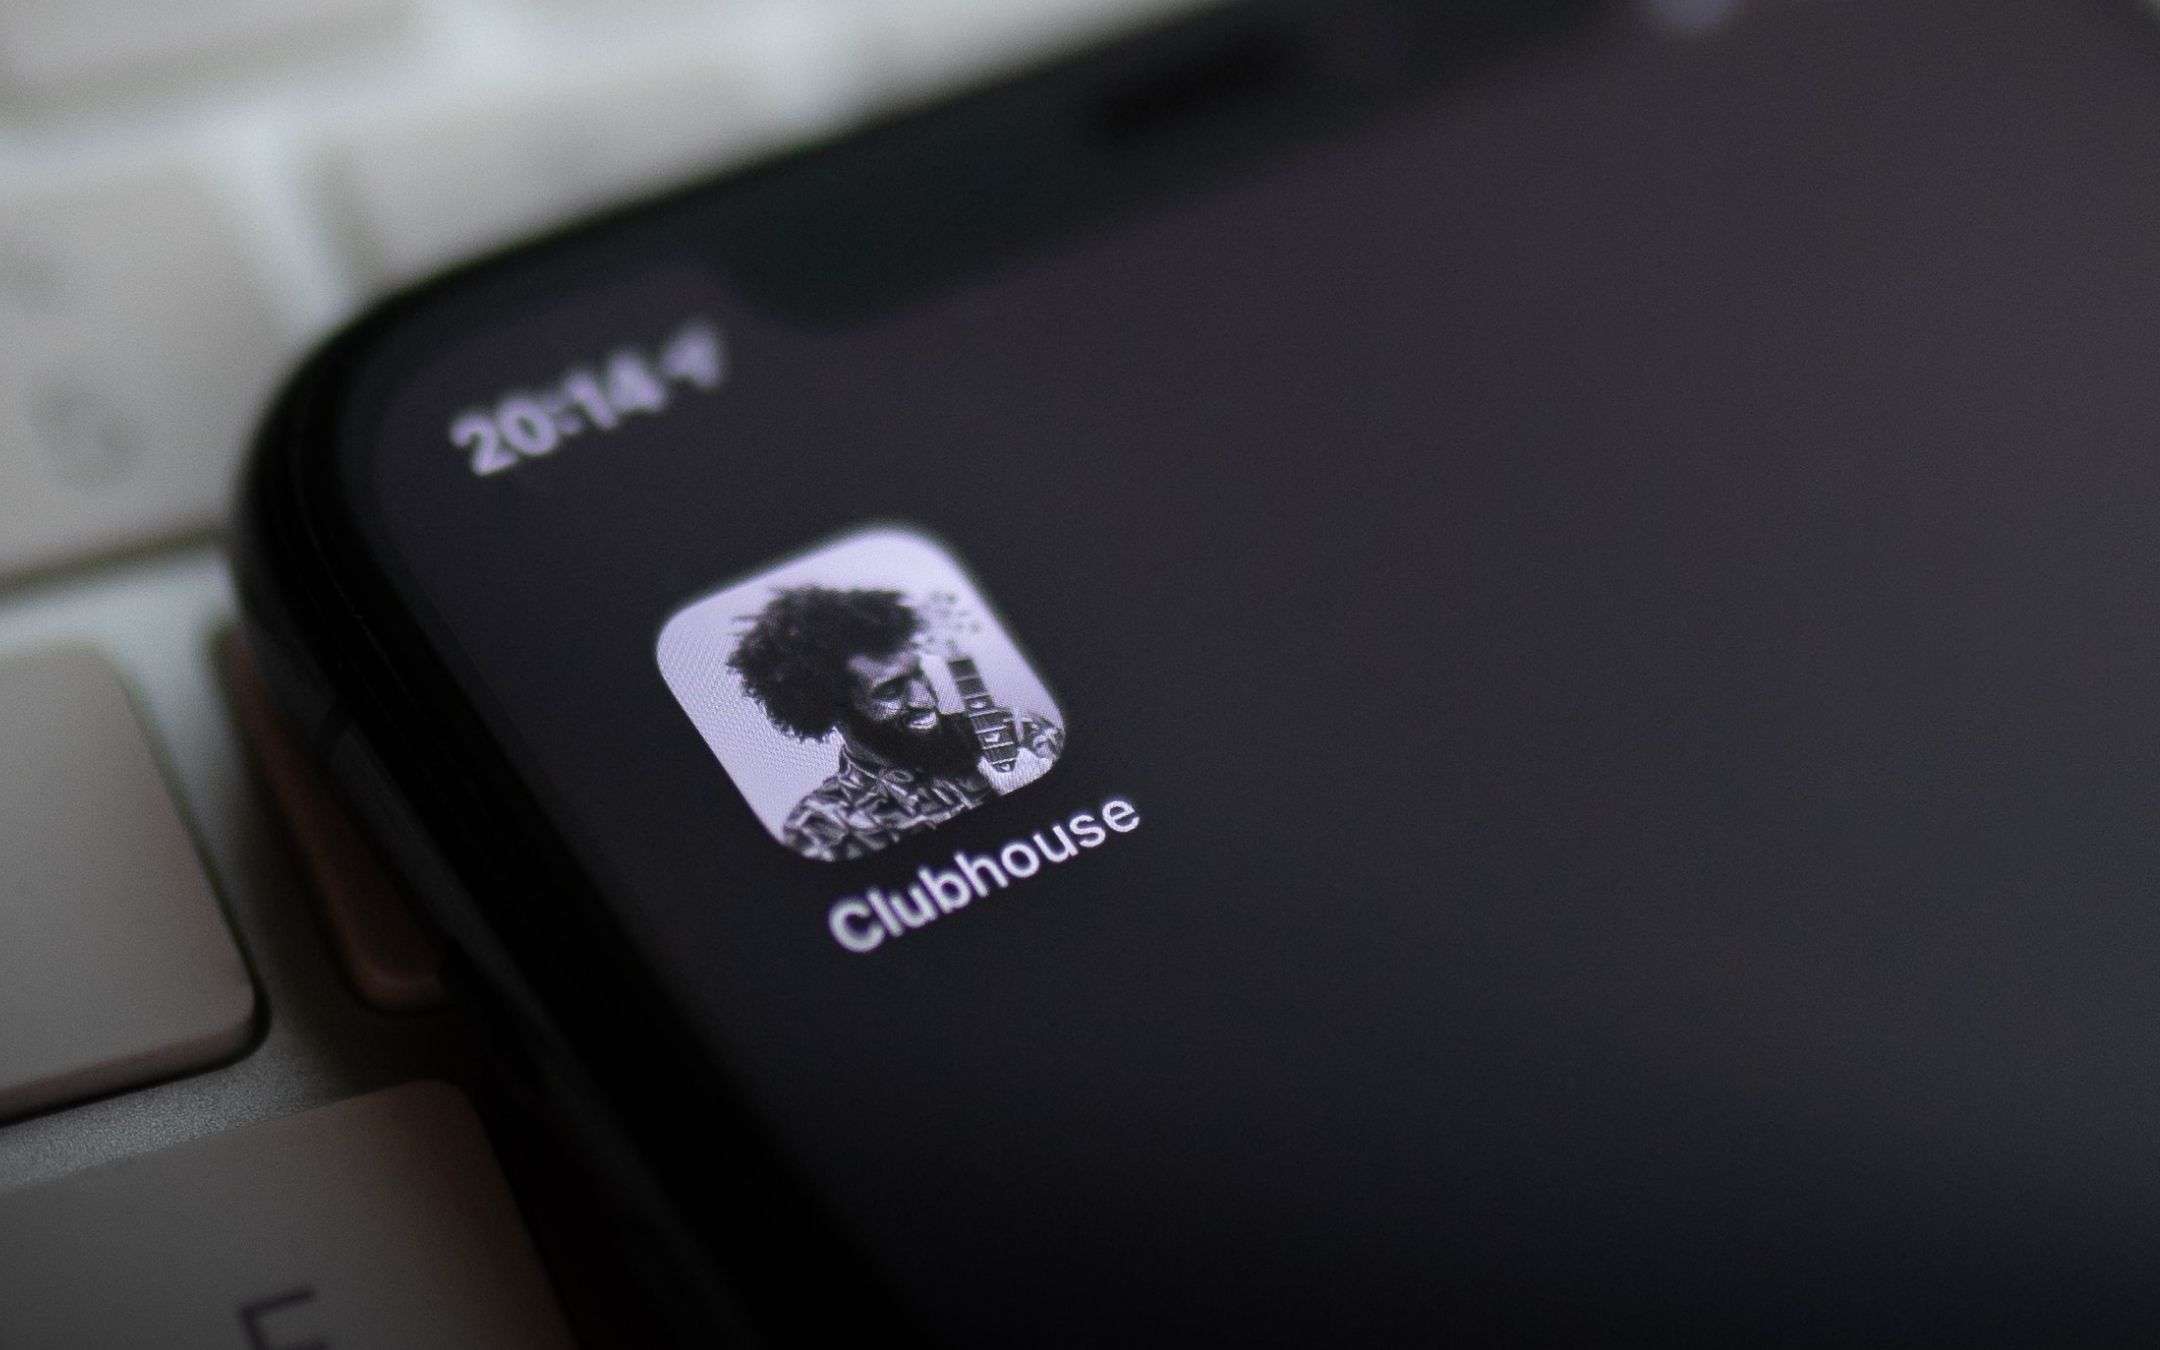 Clubhouse: TRANQUILLI, i vostri dati sono al sicuro